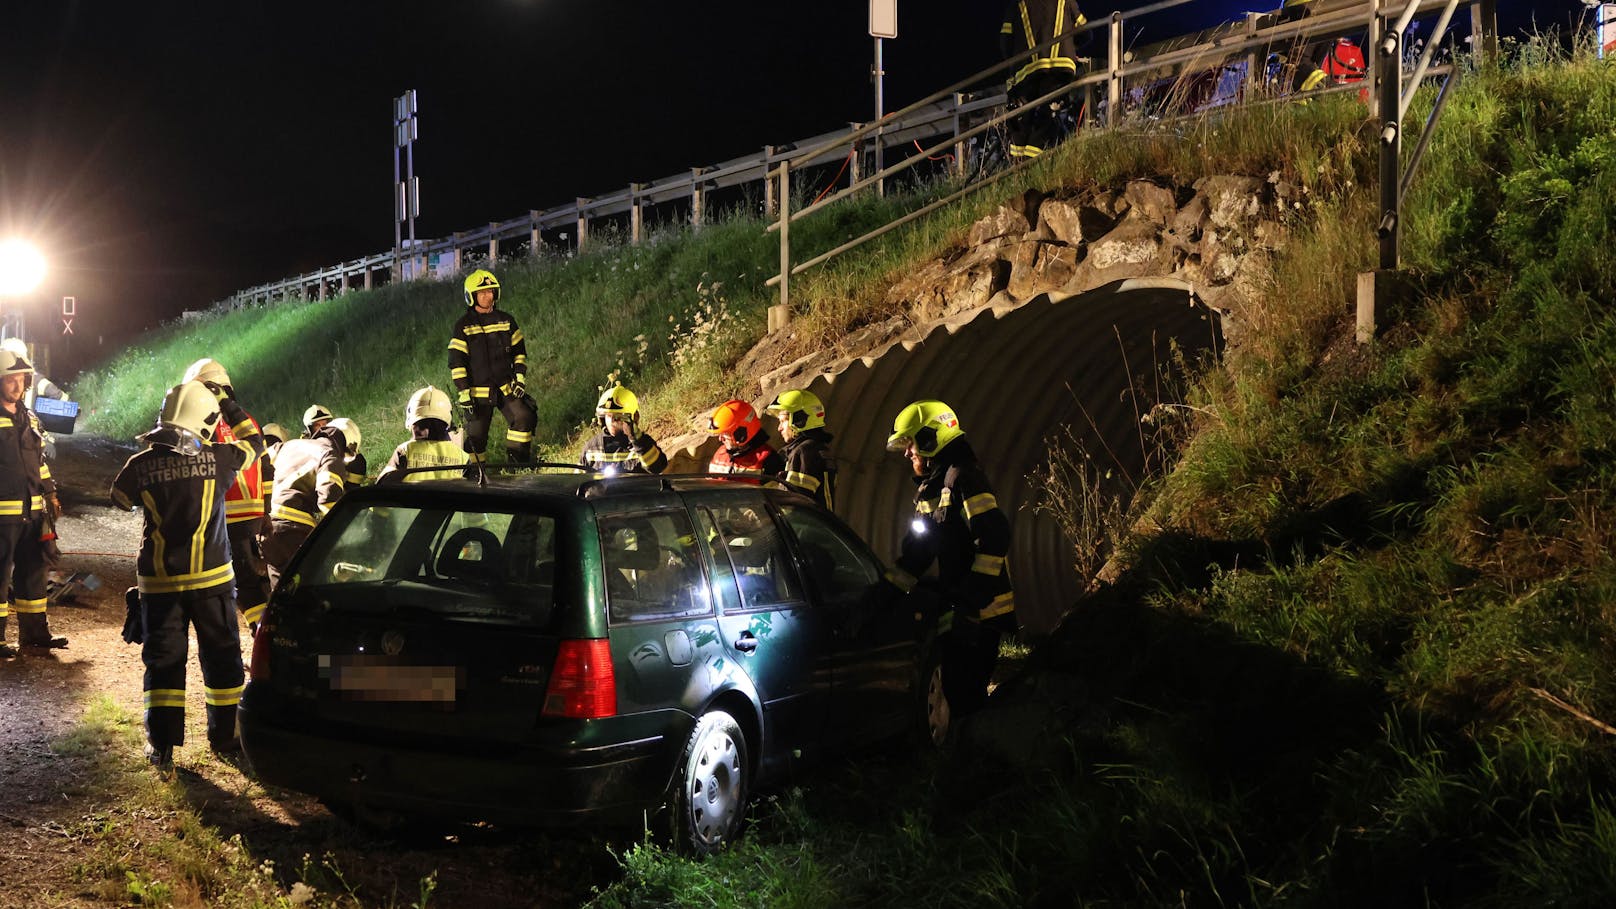 Auto-Insasse nach Crash in VW-Wrack eingeklemmt